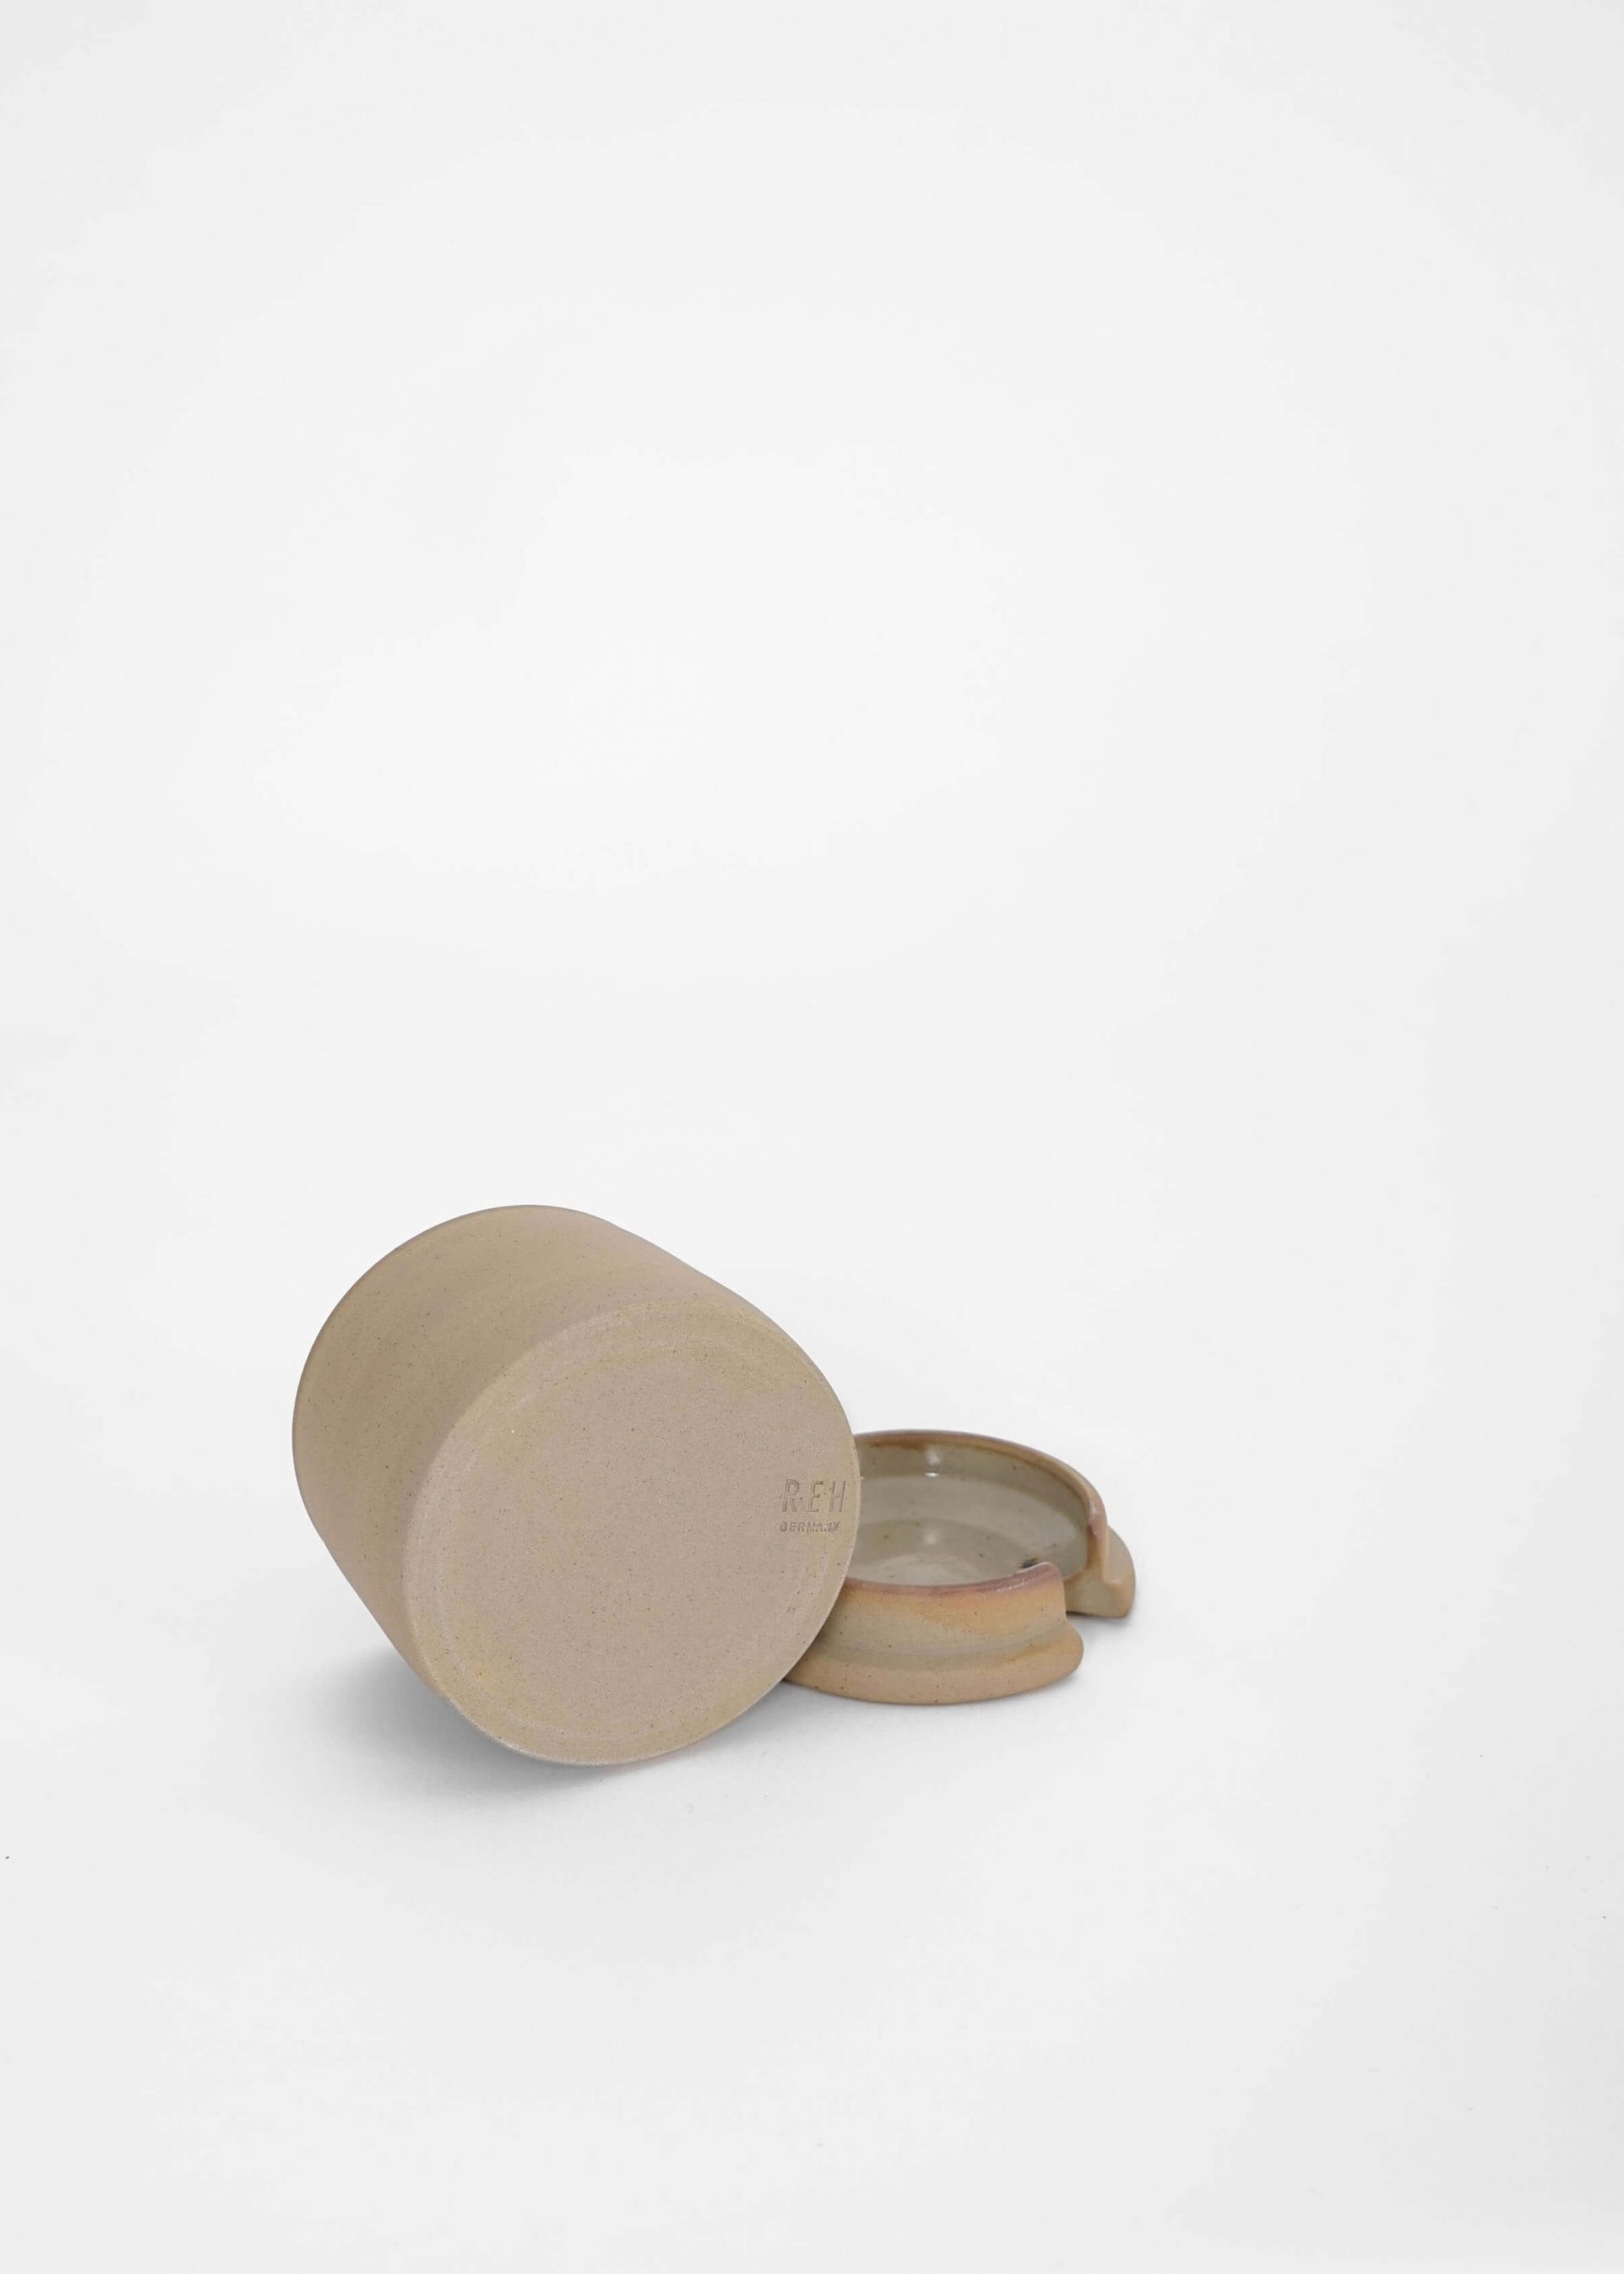 Product image for »Beuys« Unglazed Ceramic Jar with Hole | Genuine Stoneware